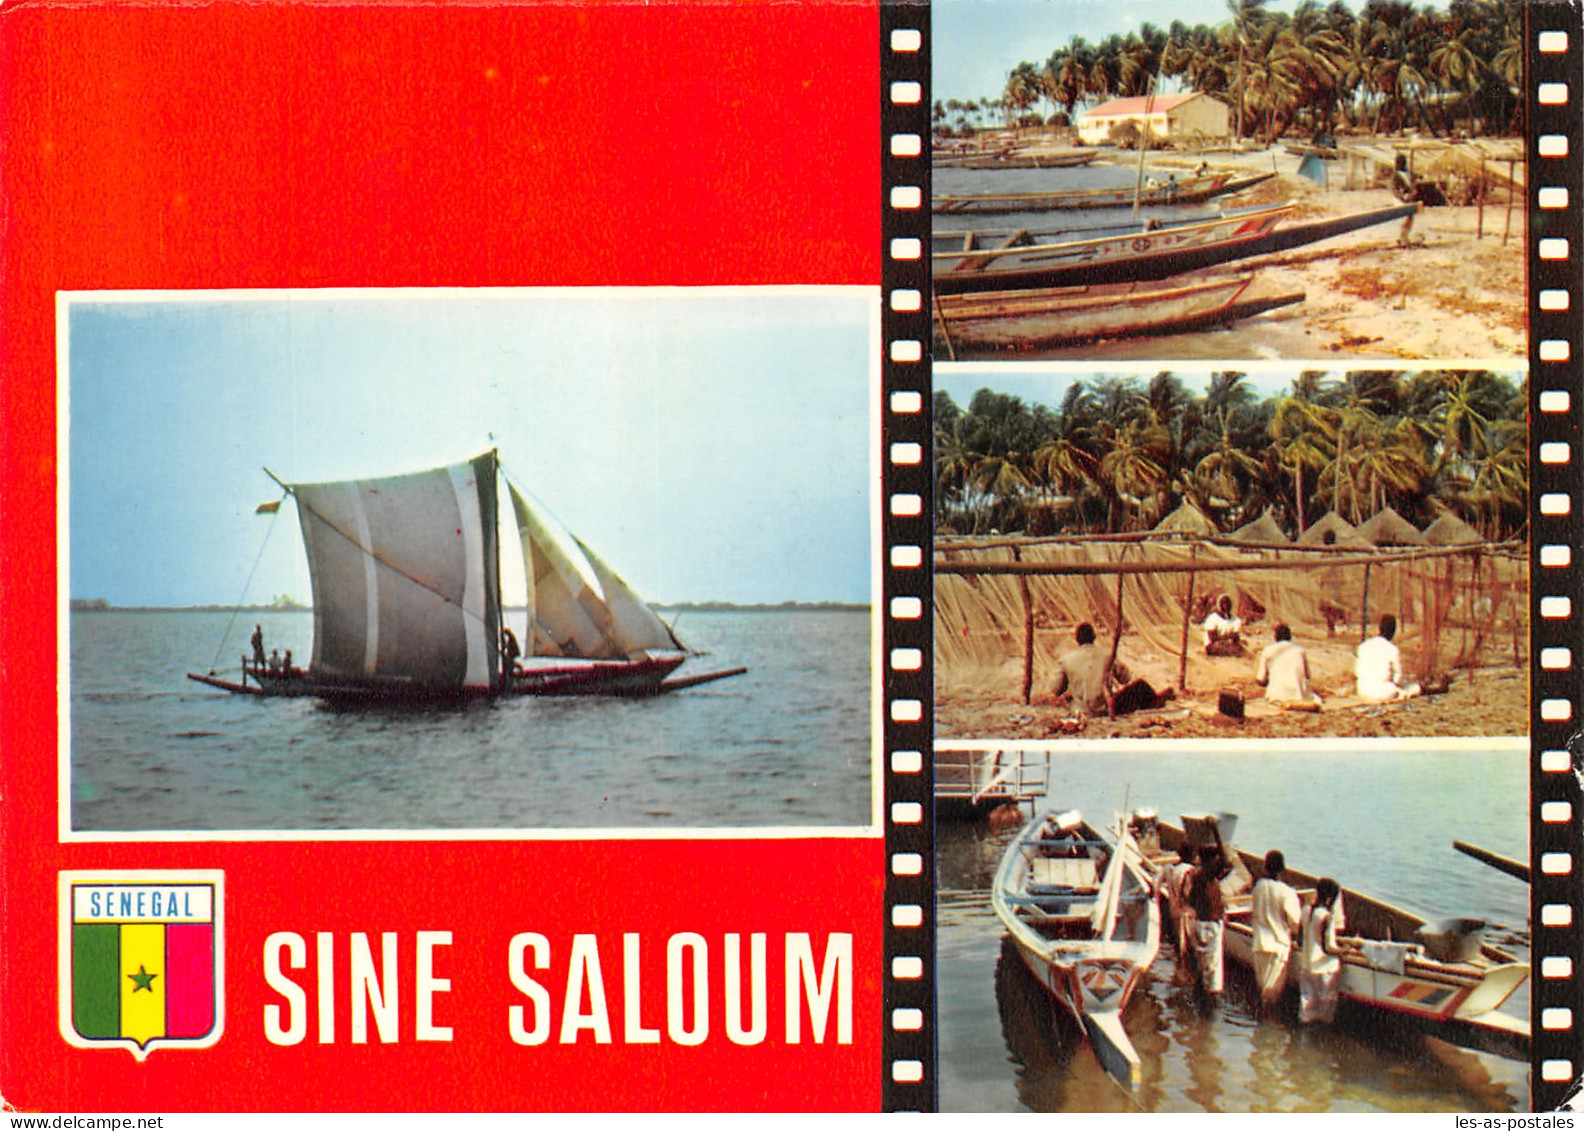 SENEGAL SINE SALOUM - Sénégal